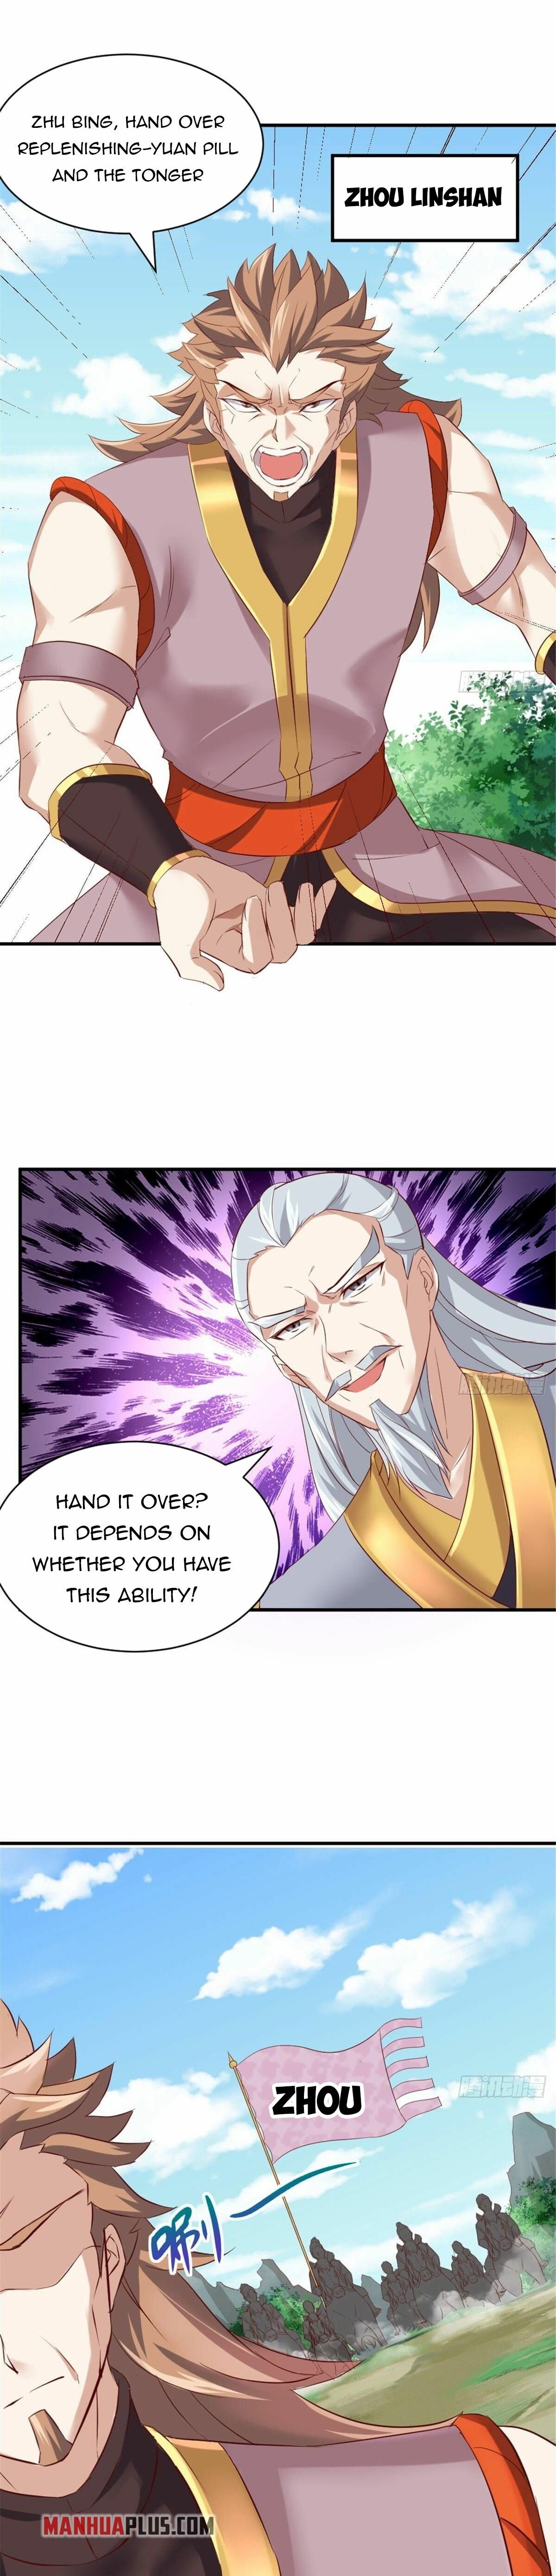 Everlasting Dragon Emperor - Page 2